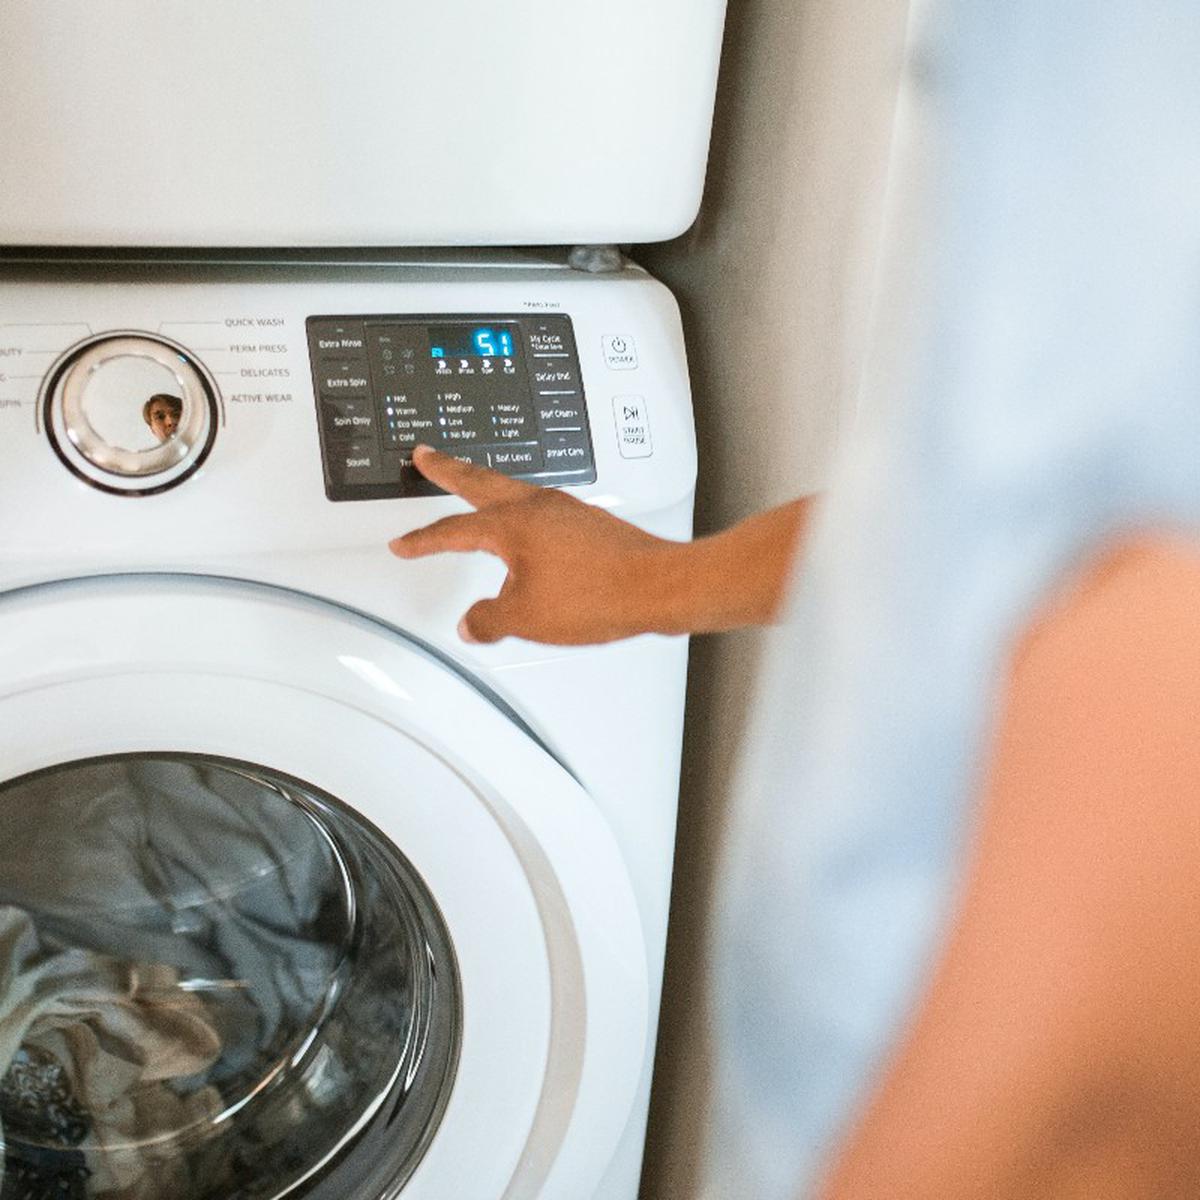 Los mejores trucos para lavar ropa | Remedios caseros | nnda nnni | RESPUESTAS | MAG.